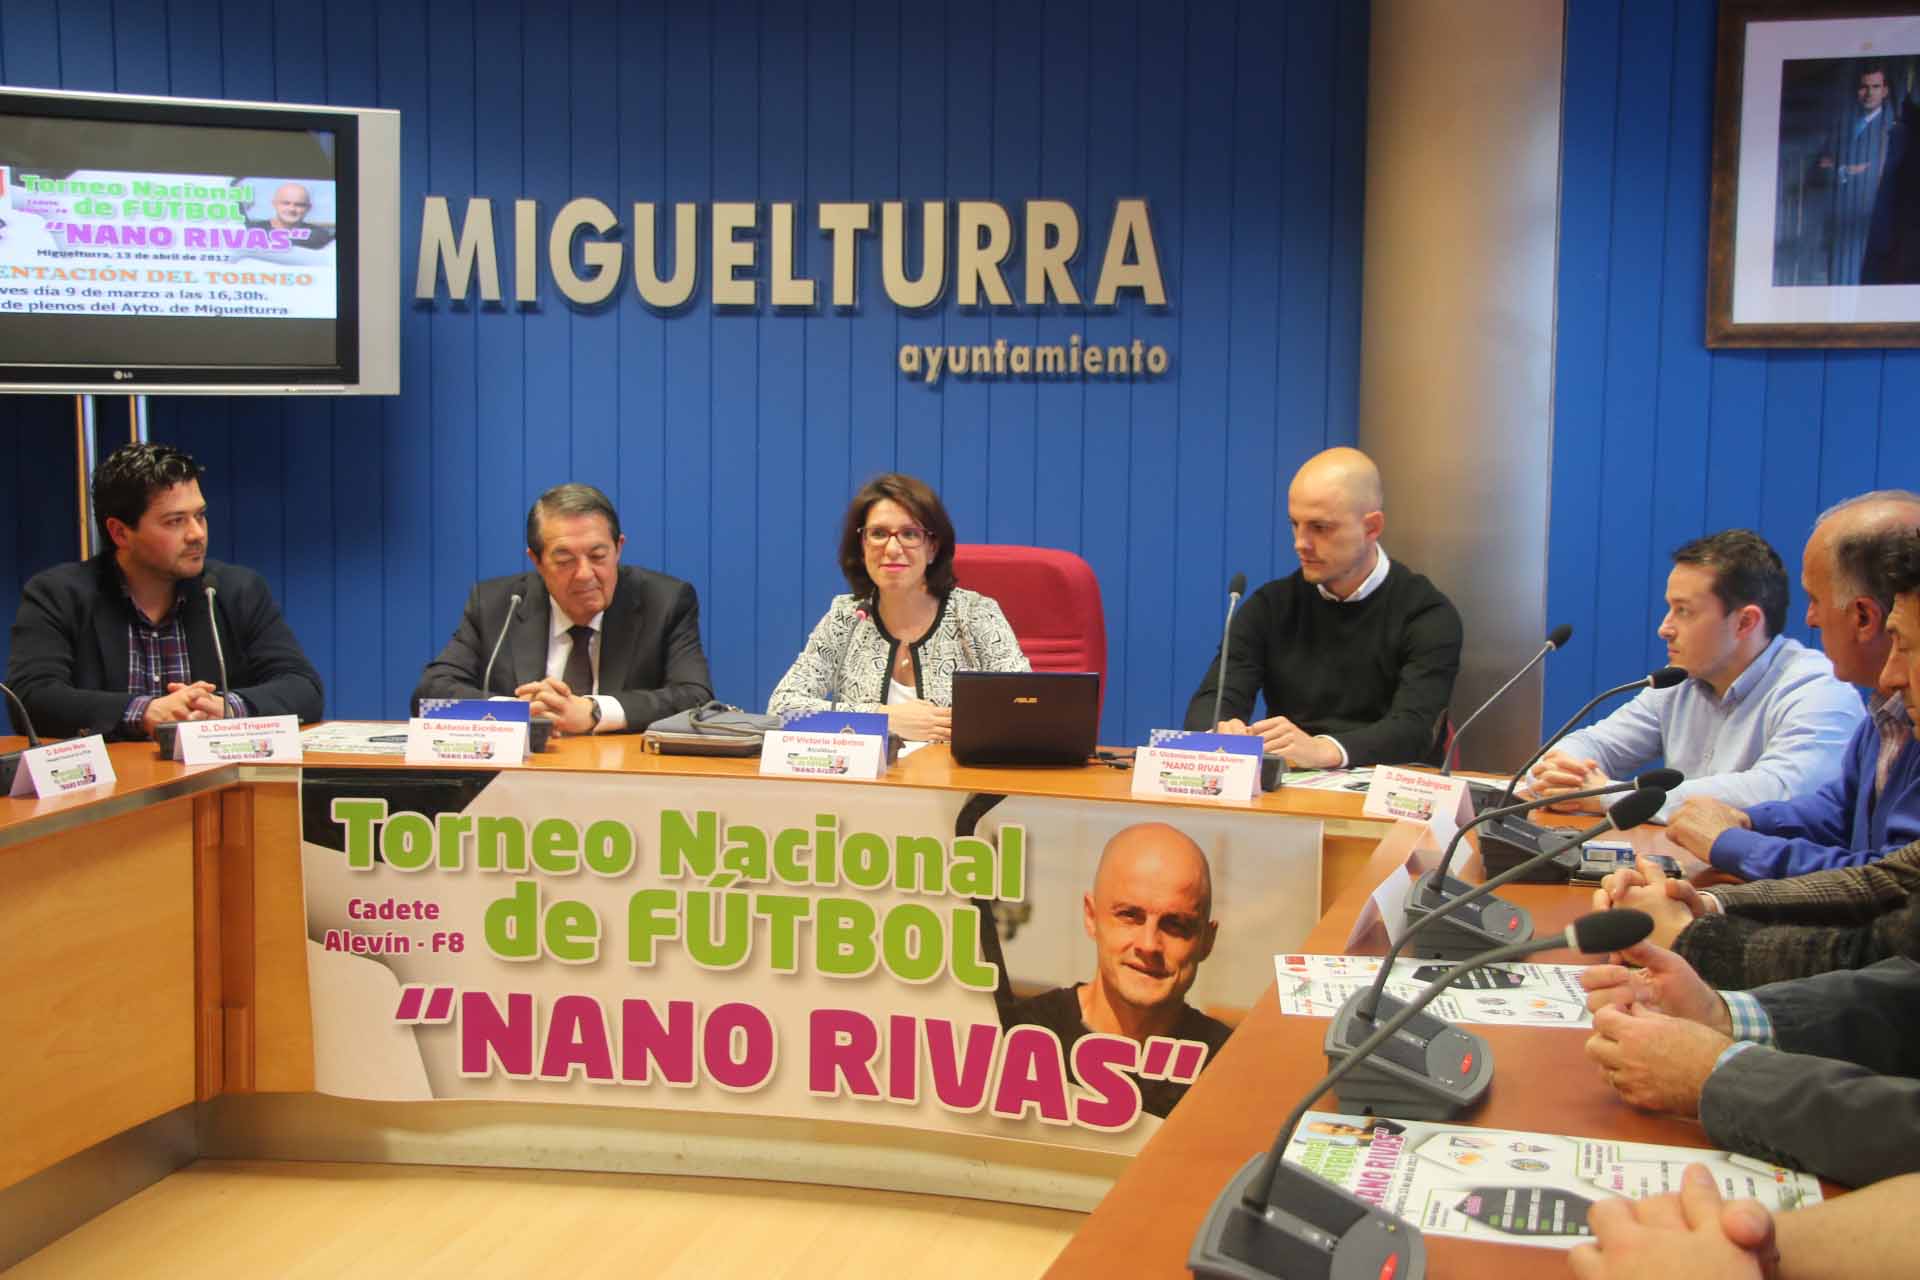 Miguelturra acogerá el 13 de abril el Torneo Nacional de Fútbol «Nano Rivas»